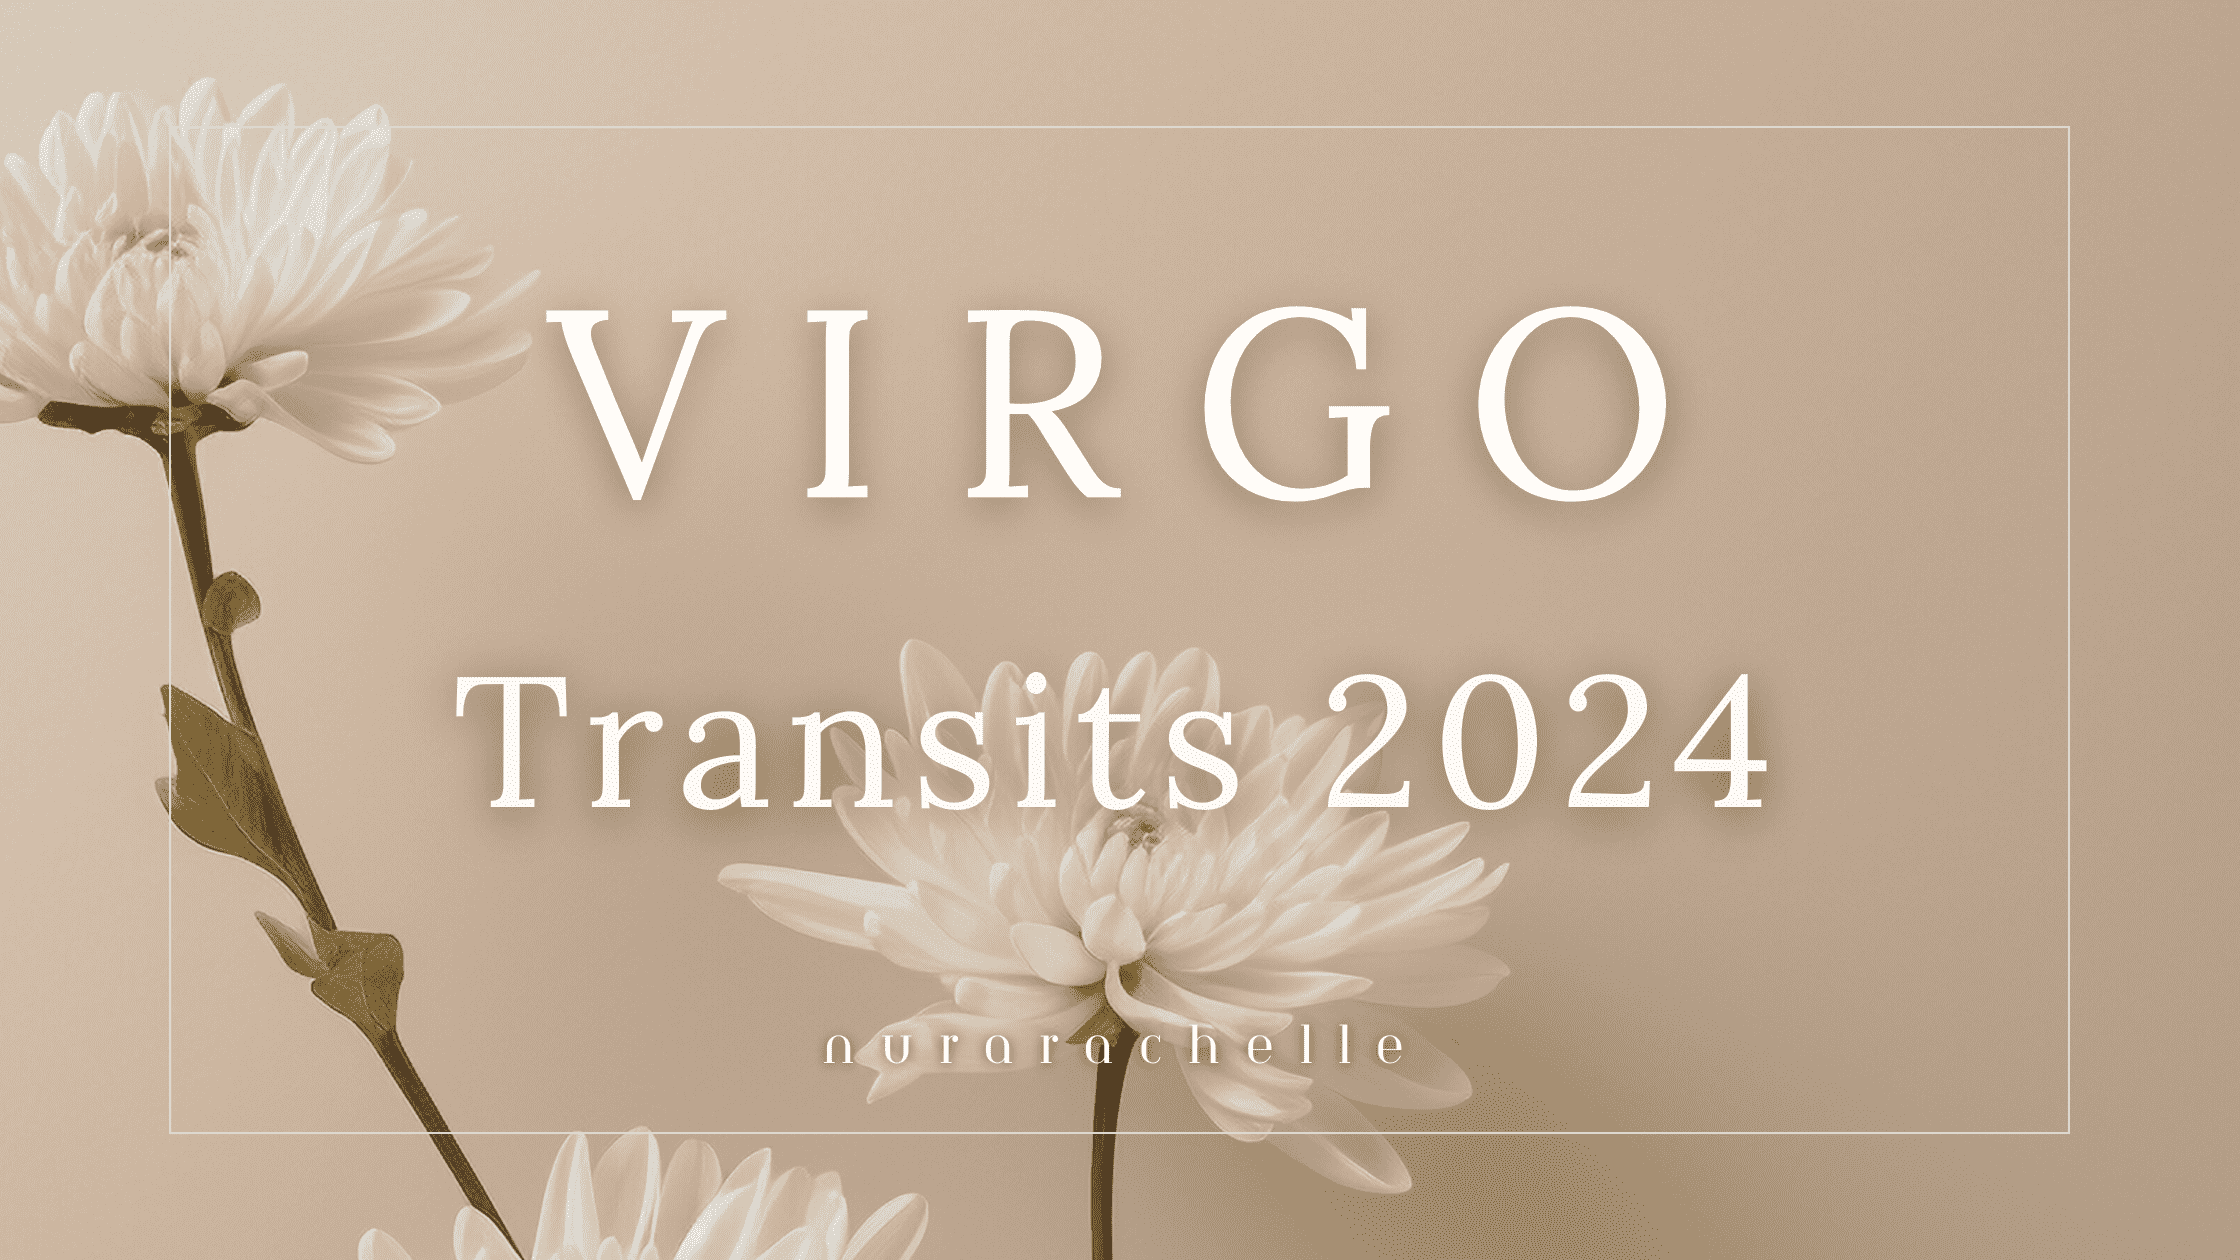 VIRGO TRANSITS